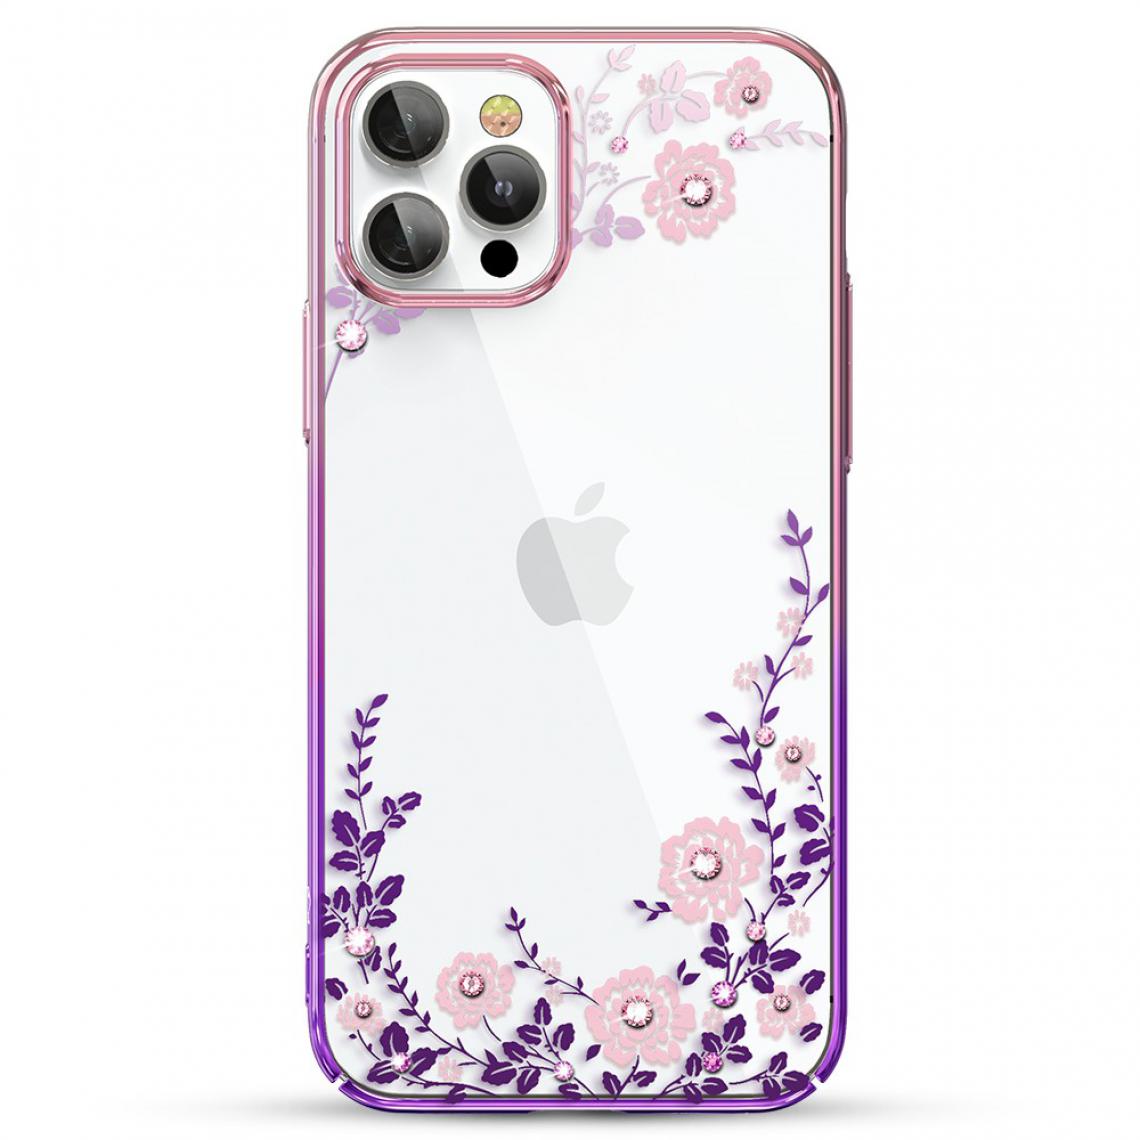 Other - Coque en TPU Cristaux de mode rigide violet pour votre Apple iPhone 12 Pro Max 6.7 pouces - Coque, étui smartphone